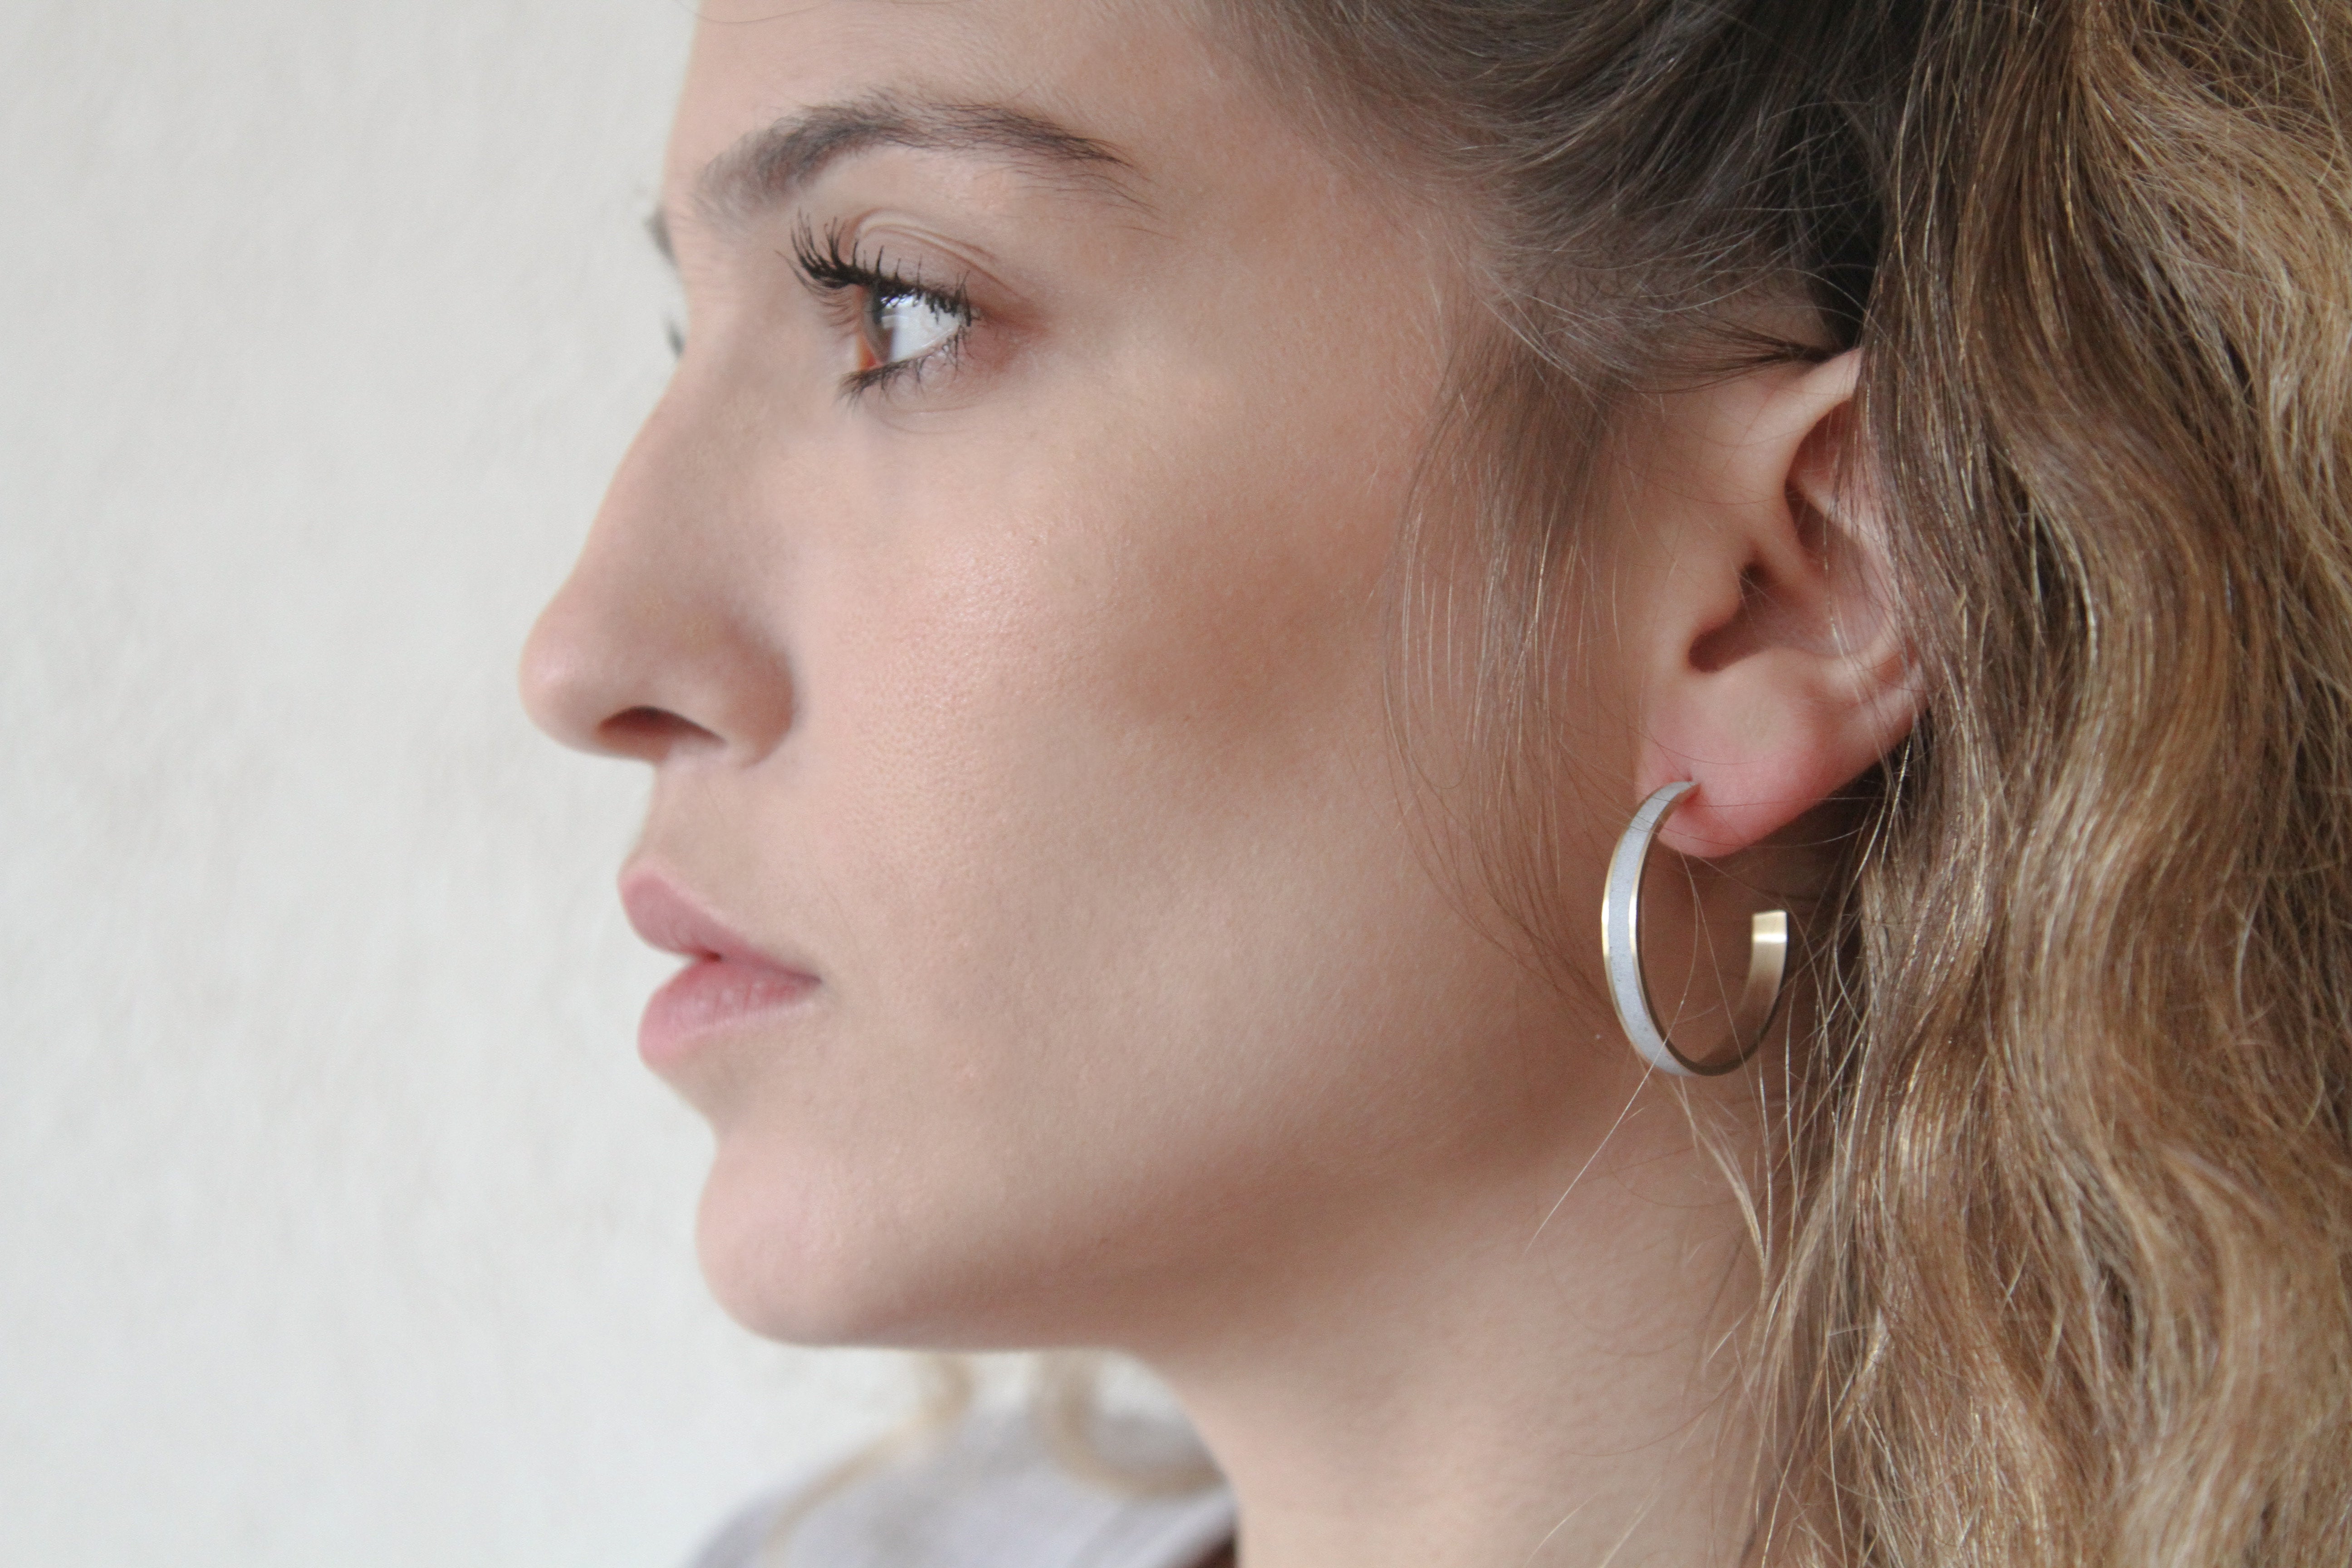 Minimalist Gold & Concrete Hoop Earrings - Size L